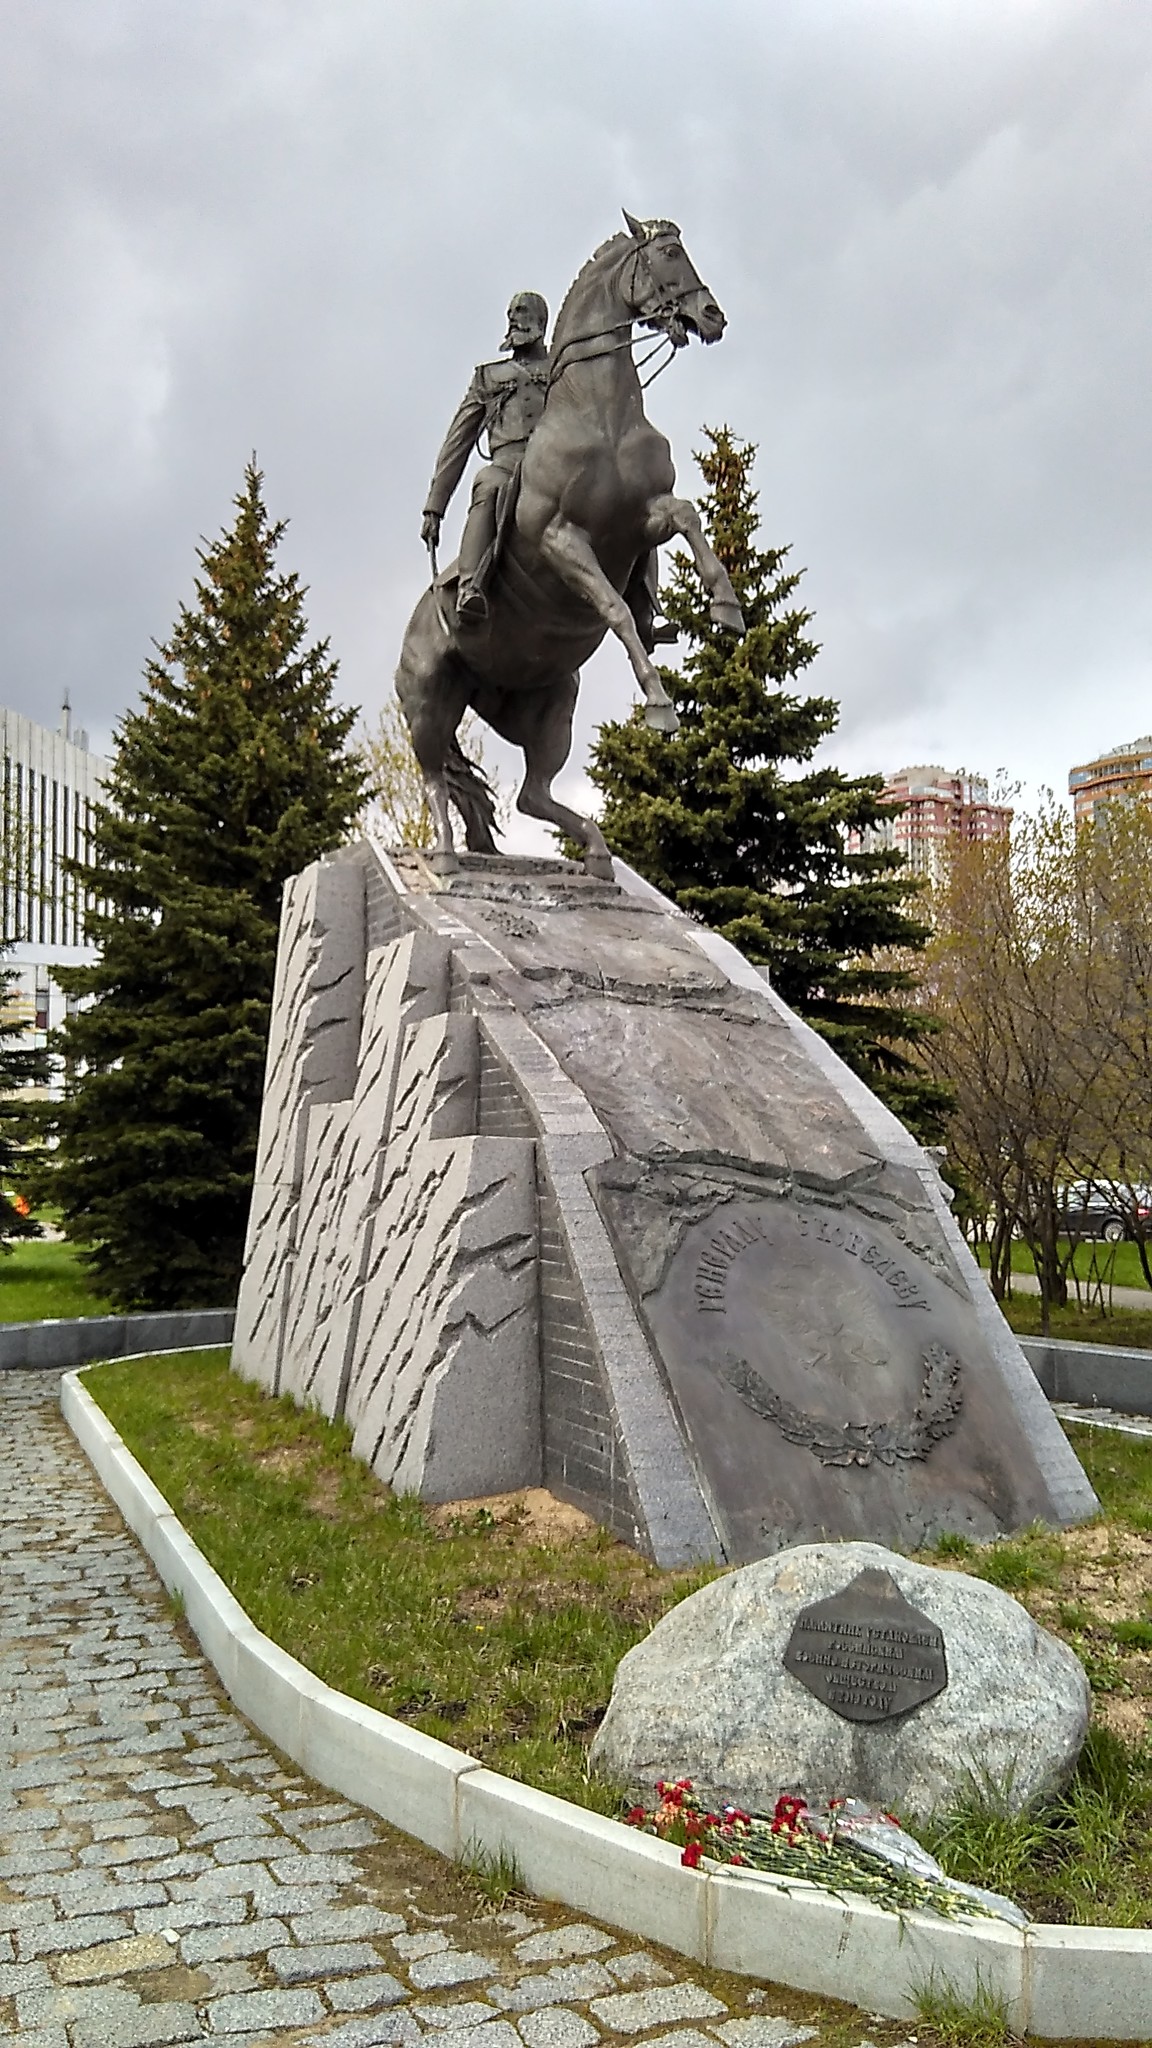 Памятник генералу скобелеву в москве фото